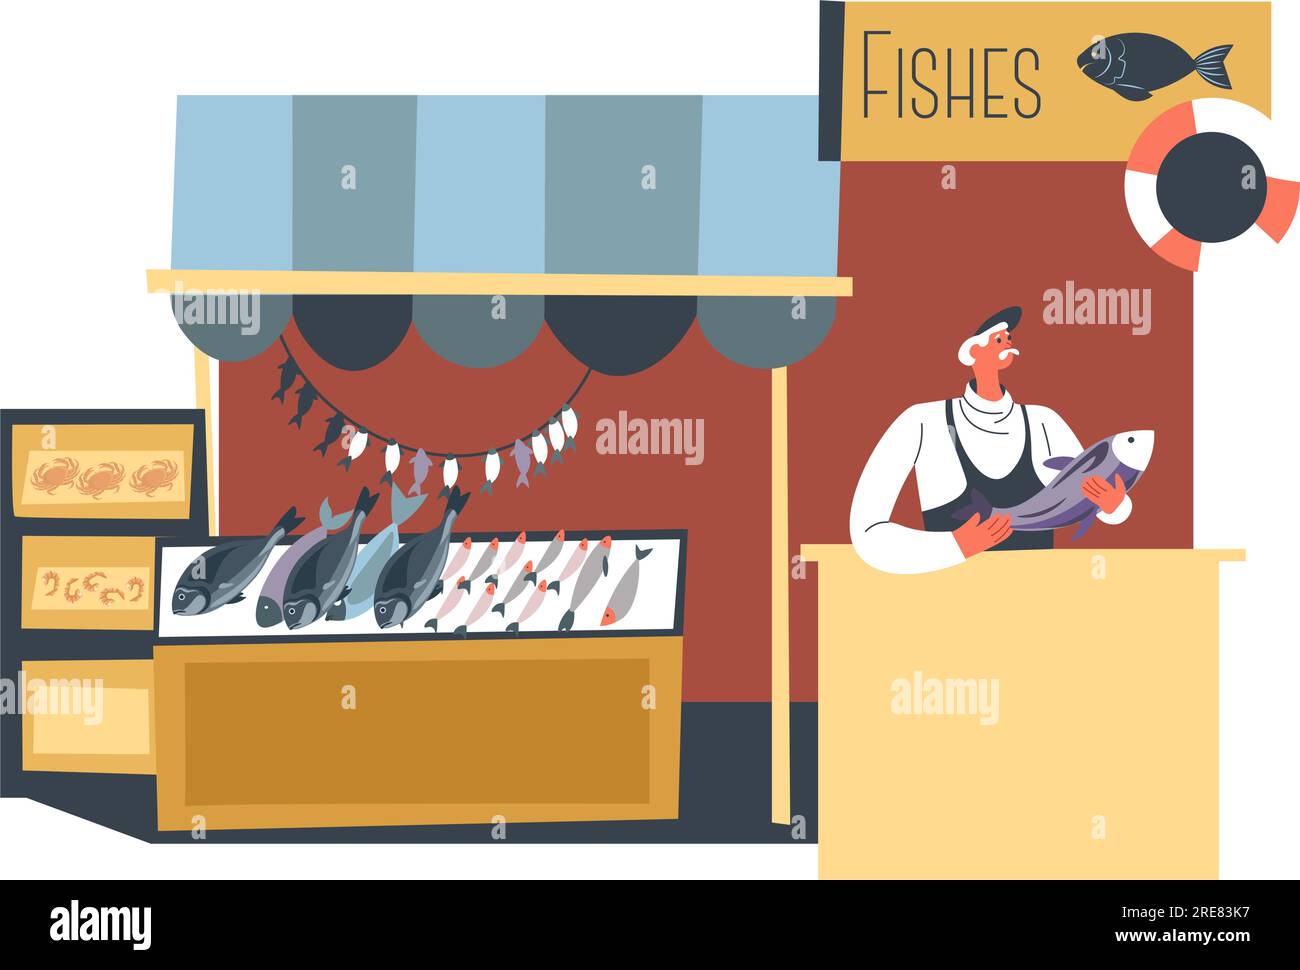 Stalle avec vendeur et assortiment de produits de poisson surgelés. Magasin isolé ou magasin avec des ingrédients pour cuisiner et préparer des plats alimentaires. Océan et mer Illustration de Vecteur